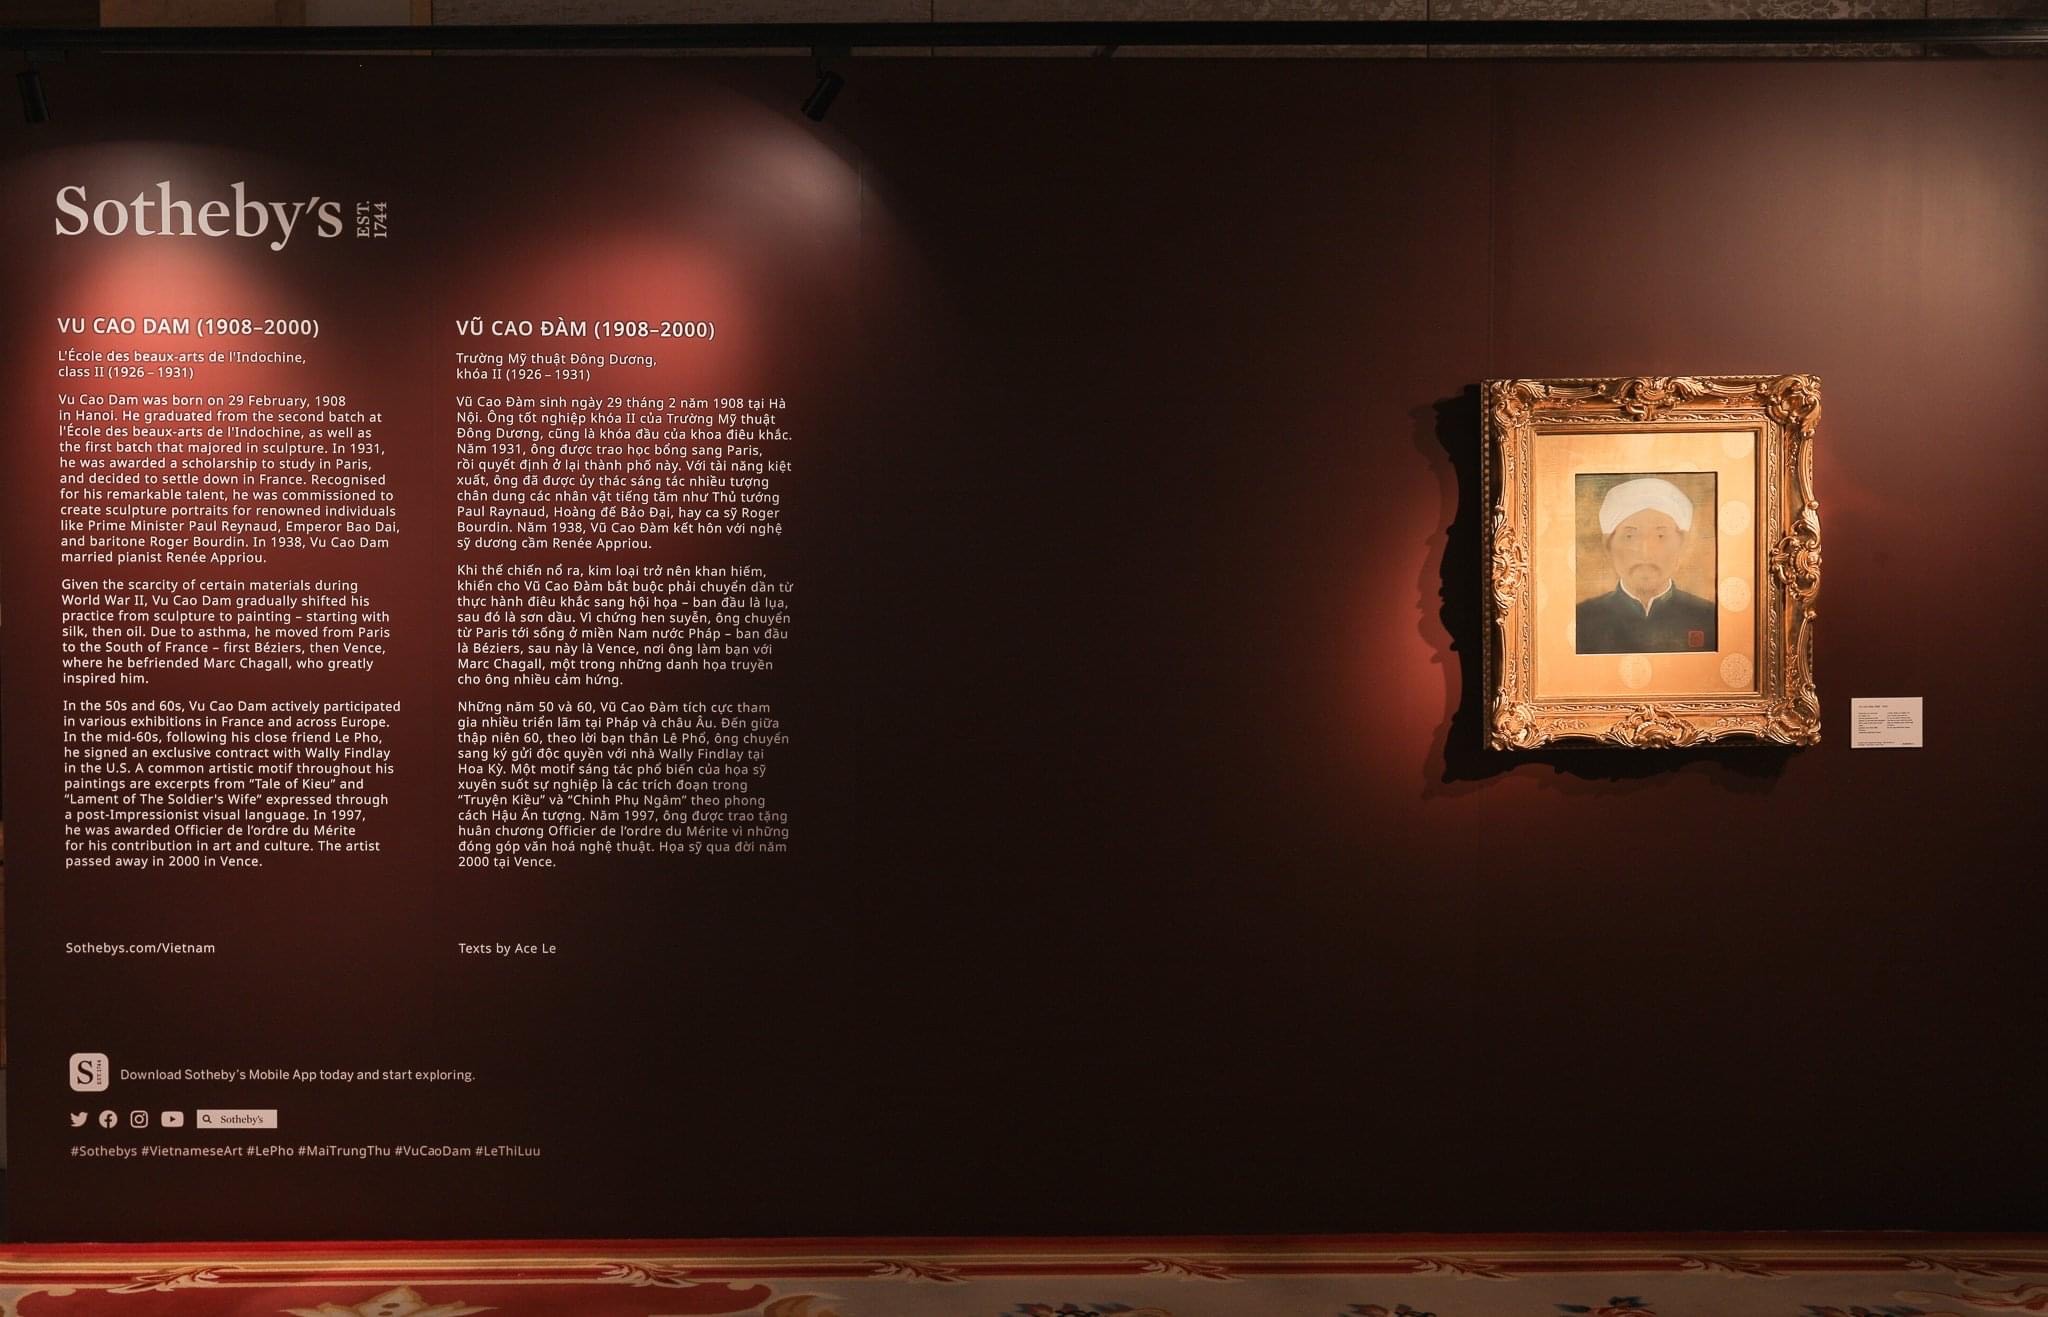 Harpers Bazaar trien lam tranh Sothebys Tu kiet Dong Duong 10 - Sotheby’s triển lãm tranh “Tứ kiệt Đông Dương” Phổ-Thứ-Lựu-Đàm lớn nhất Việt Nam